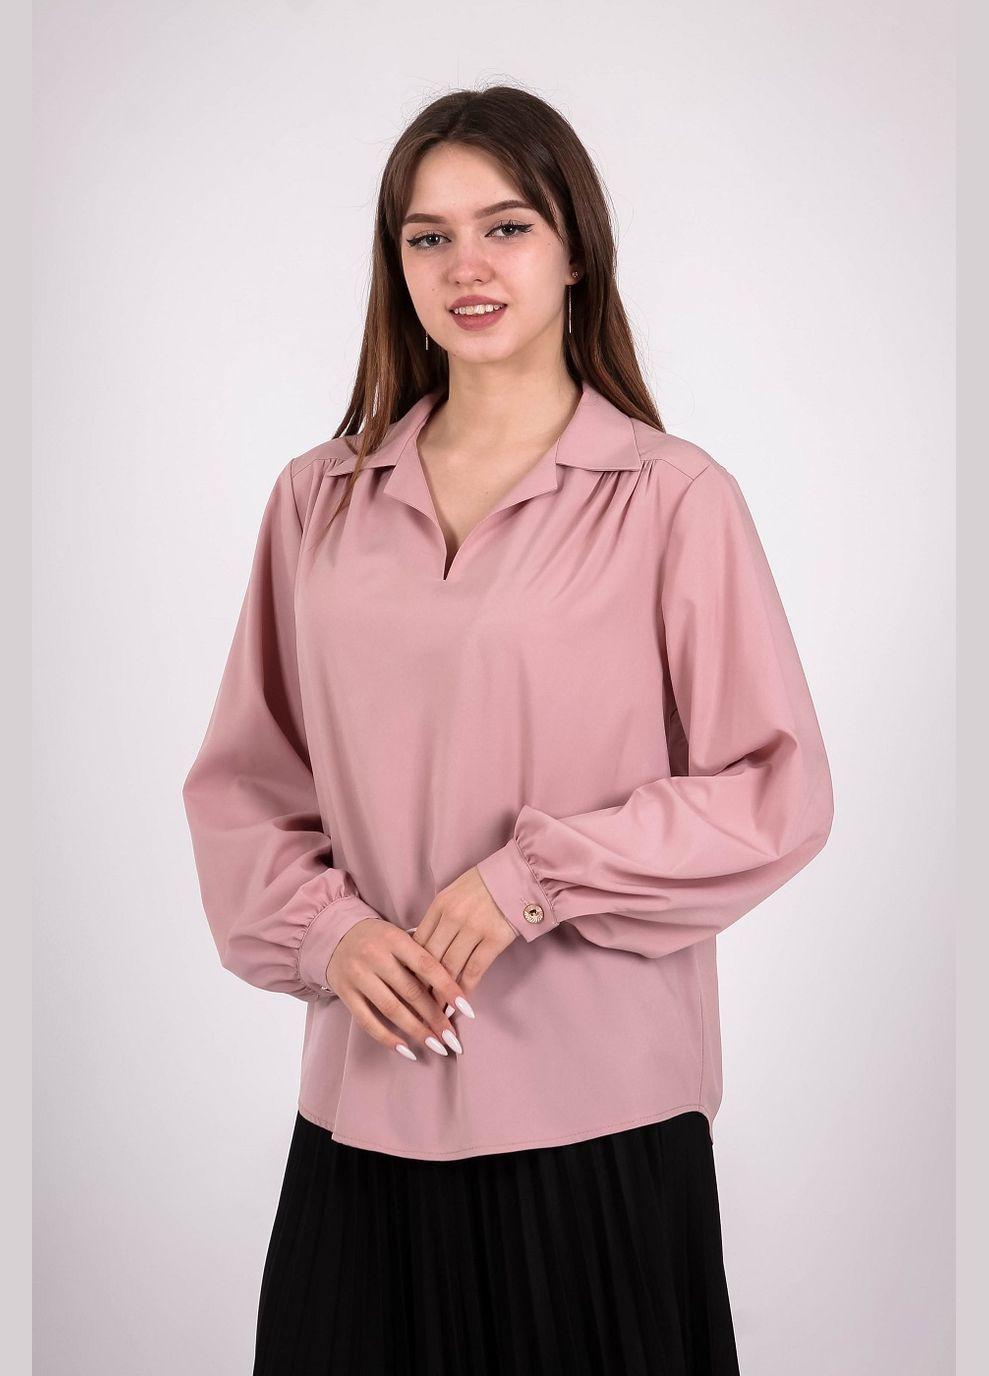 Пудровая демисезонная блузка женская 052 однотонный софт светло-пудровая Актуаль